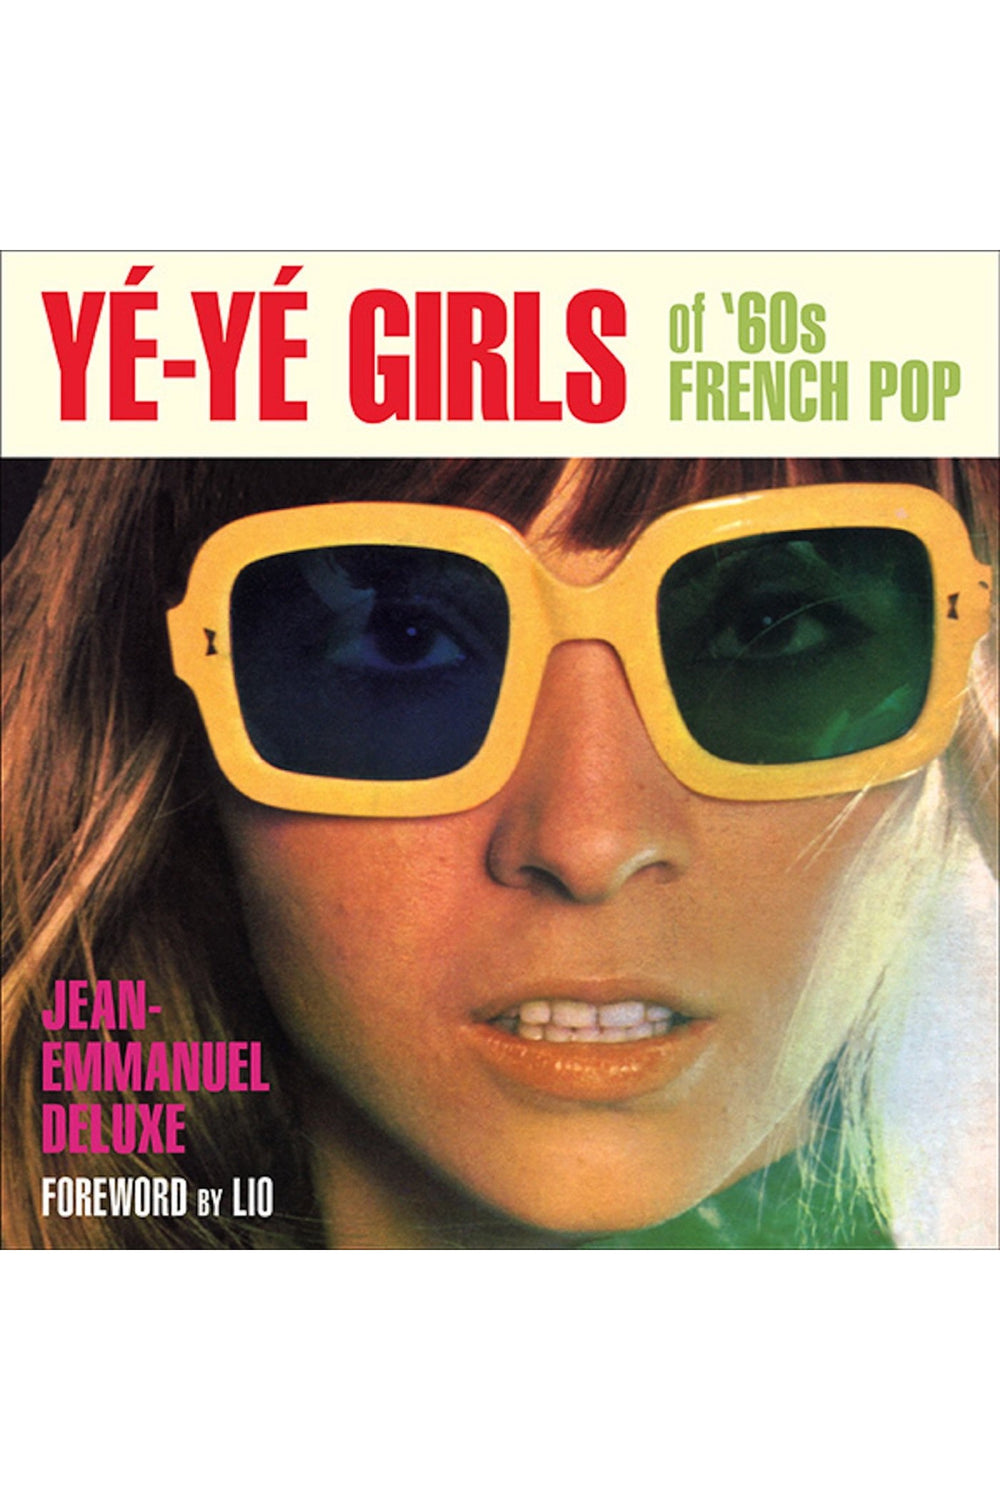 Yé-Yé Girls of '60s French Pop